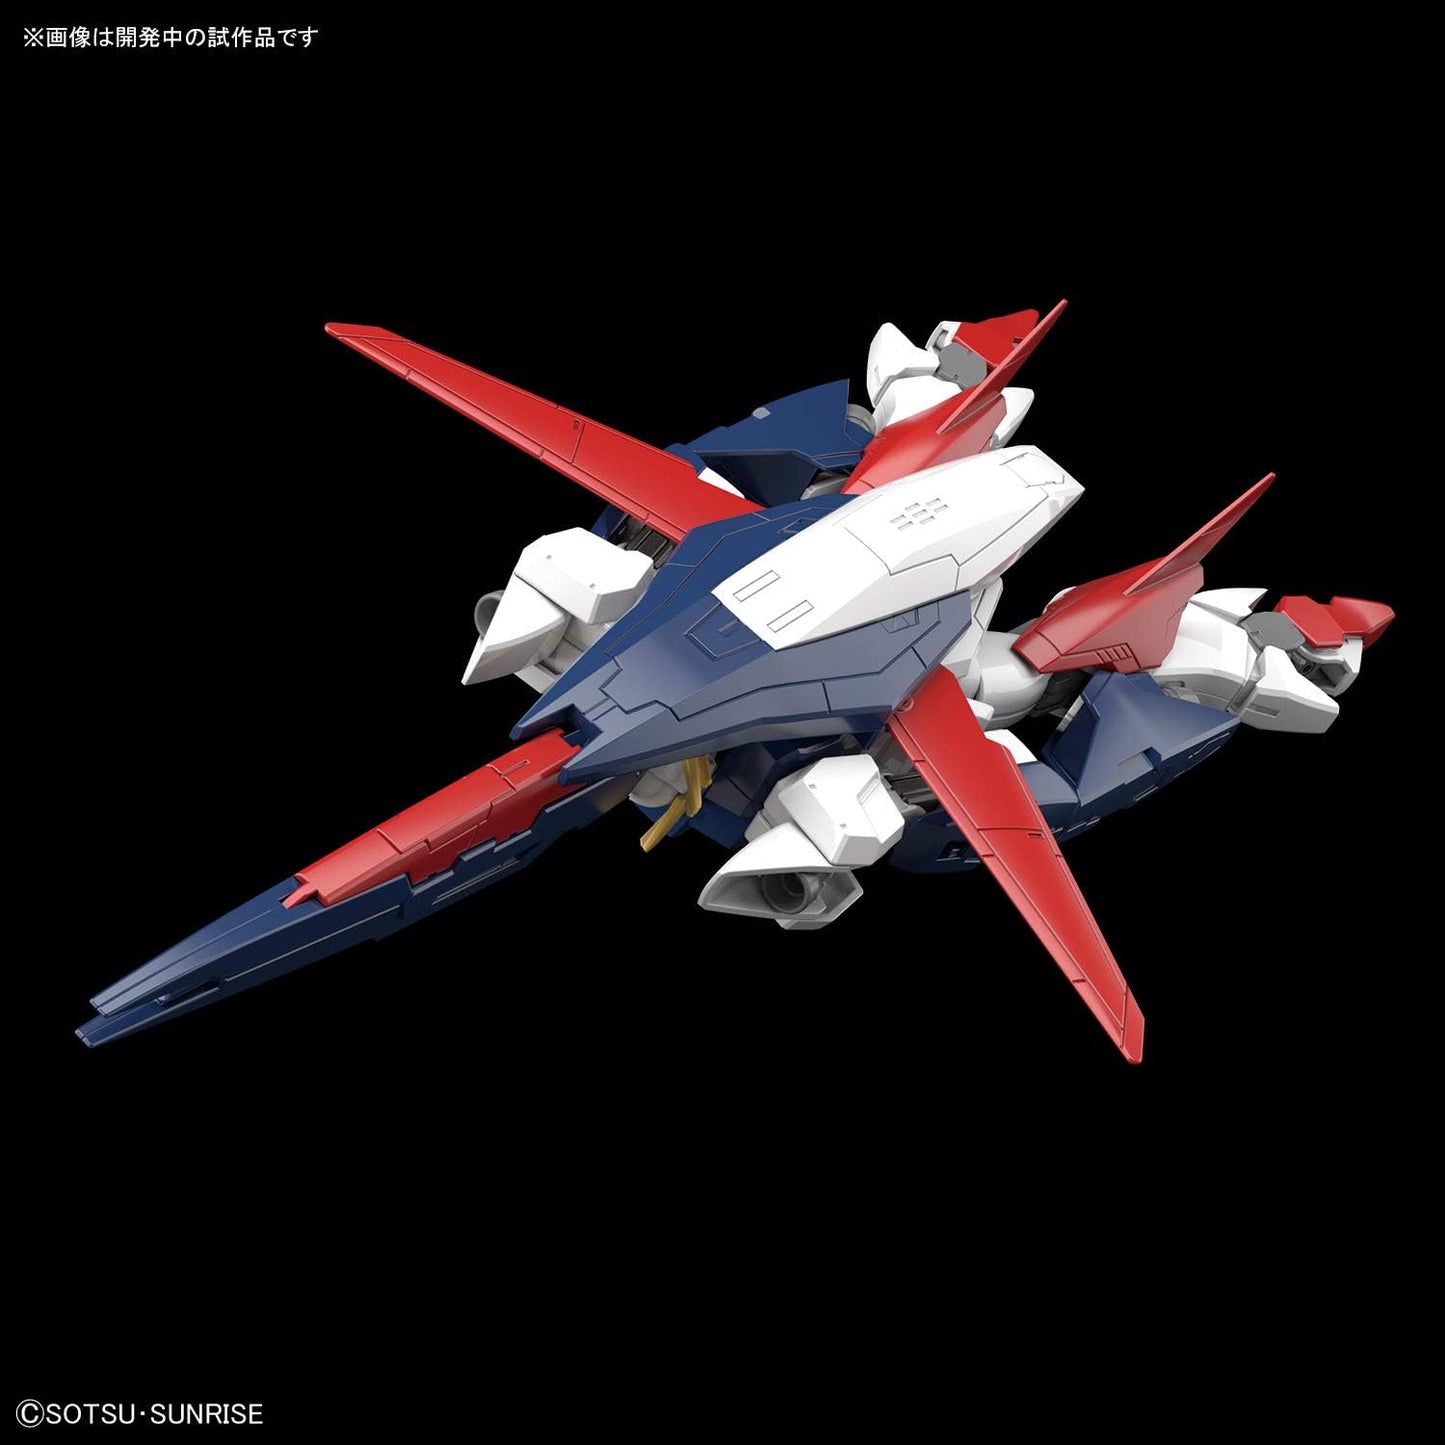 1/144 HGBD Gundam Shinning Break | animota